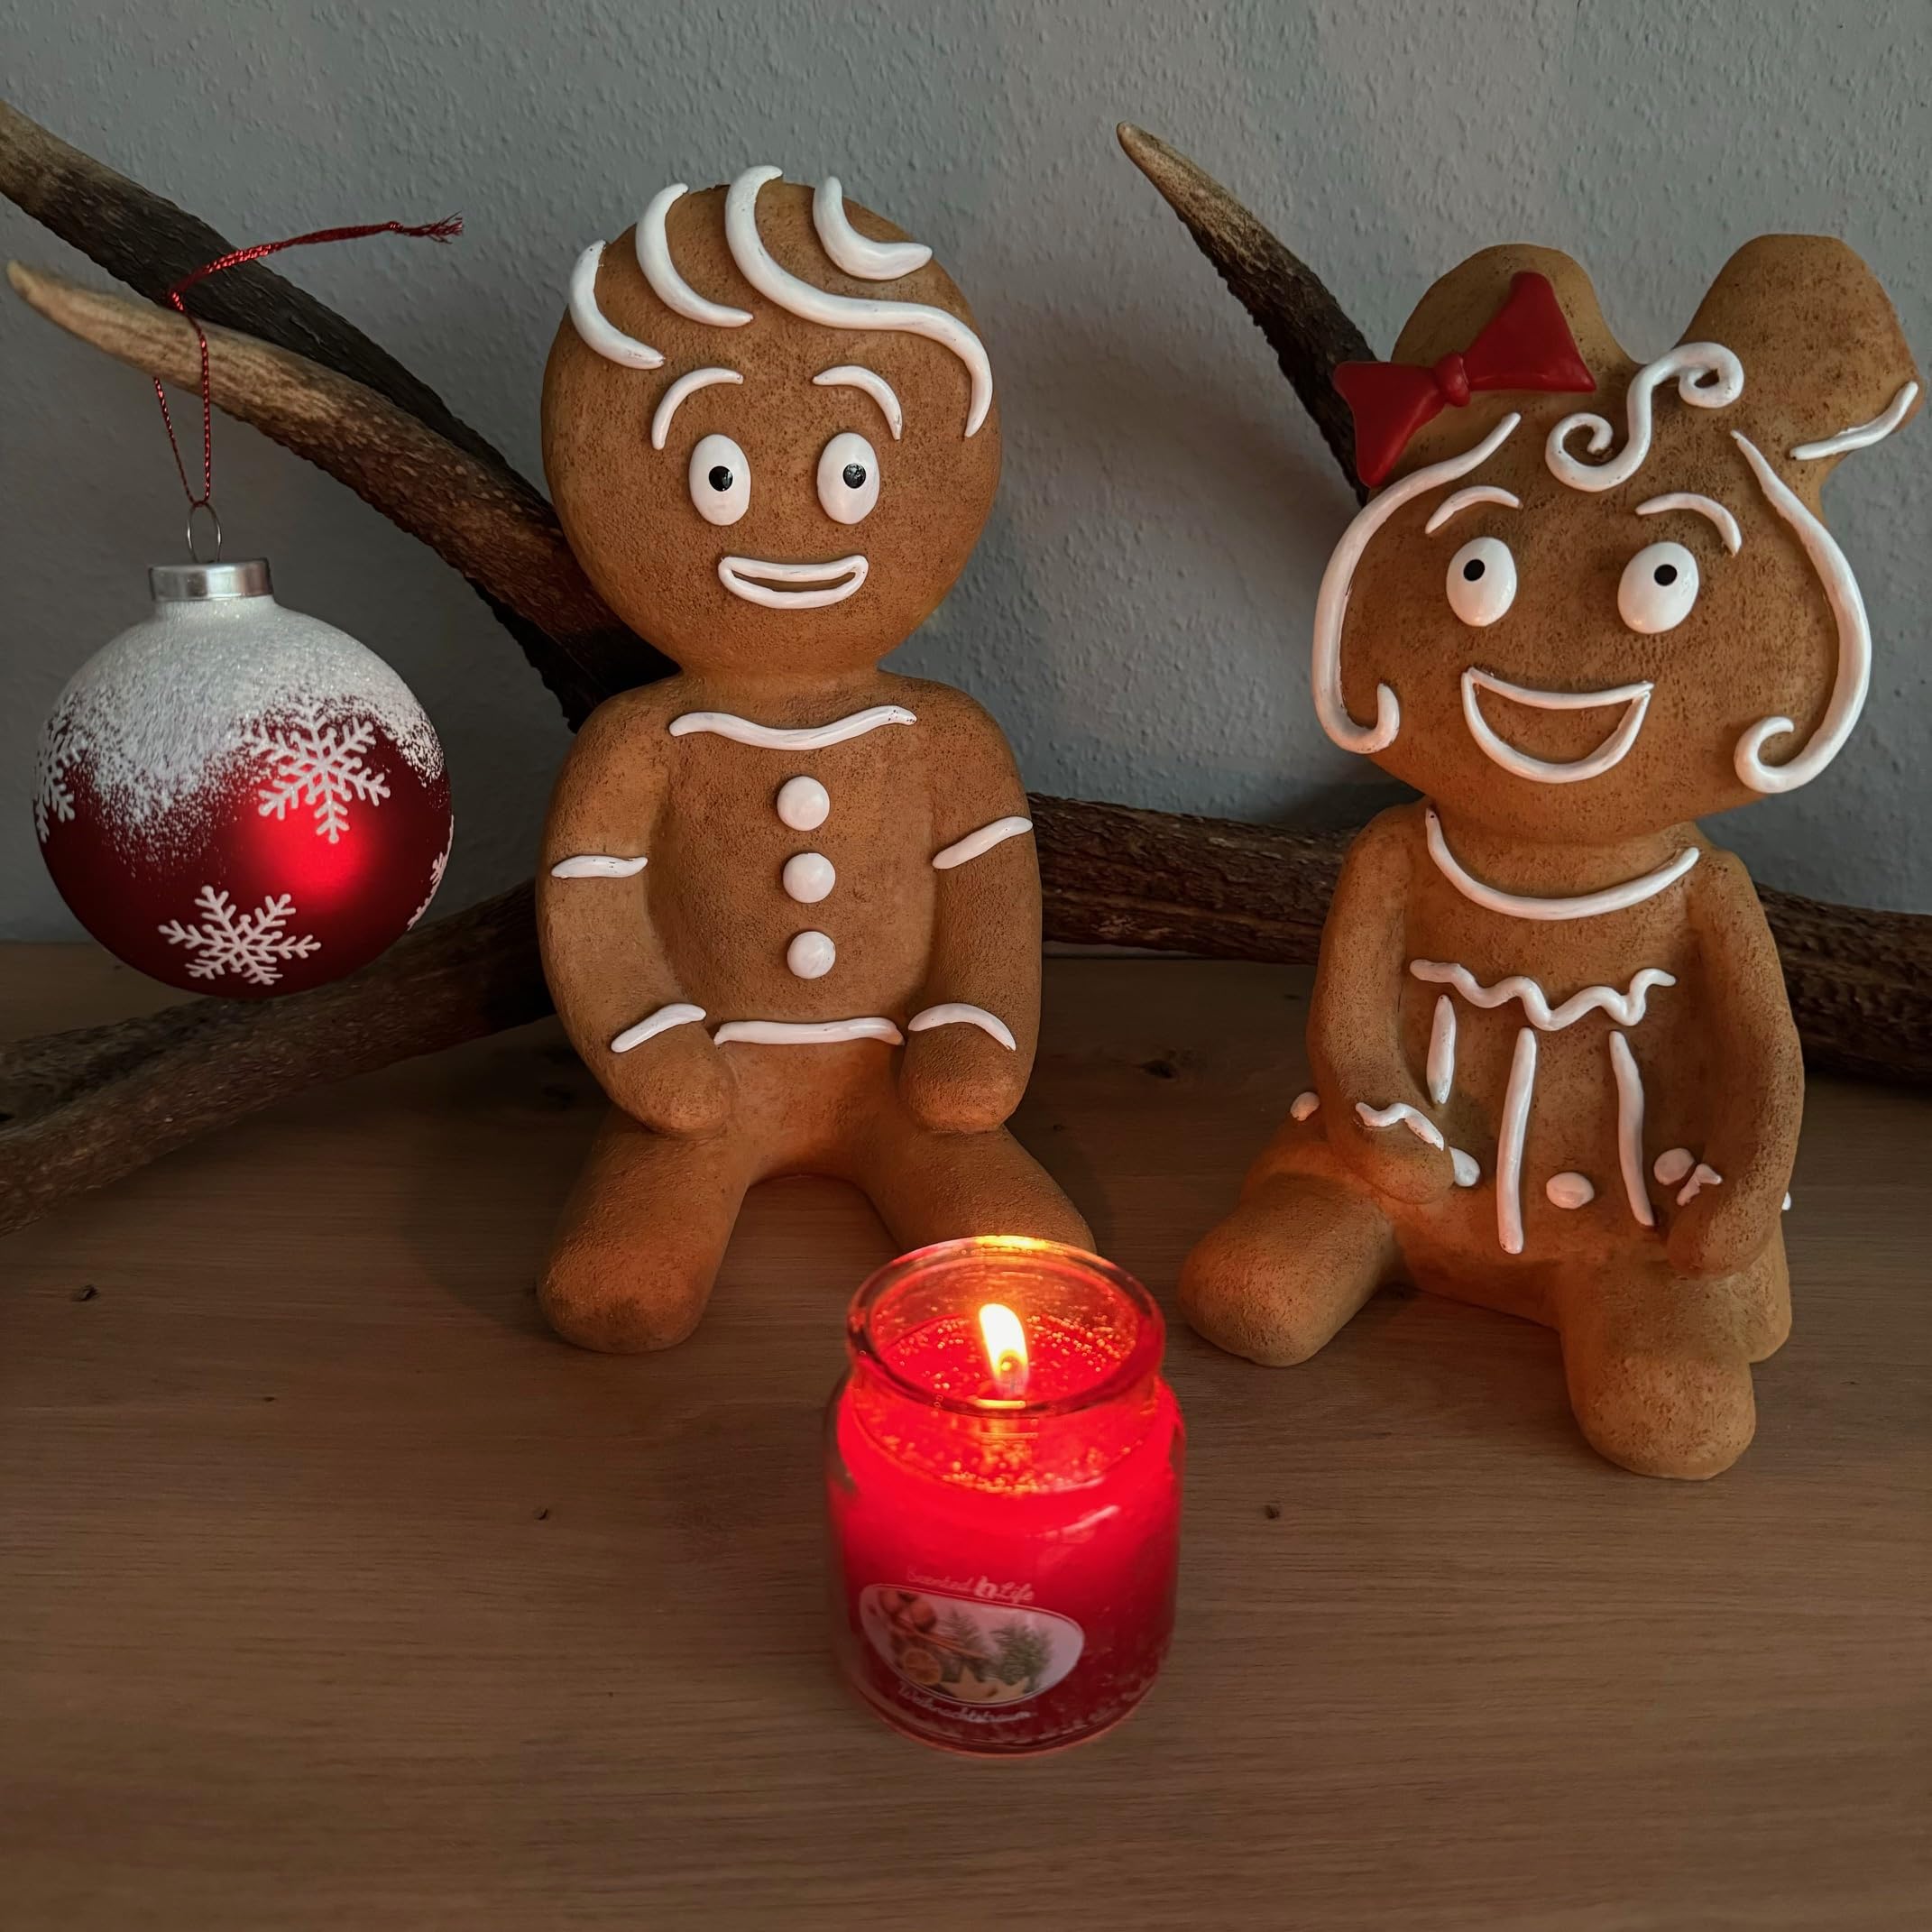 OF 2 Deko Figuren Lebkuchenmann & Frau sitzend als Weihnachtsdeko für innen & aussen - Gartenfiguren - 24 cm groß